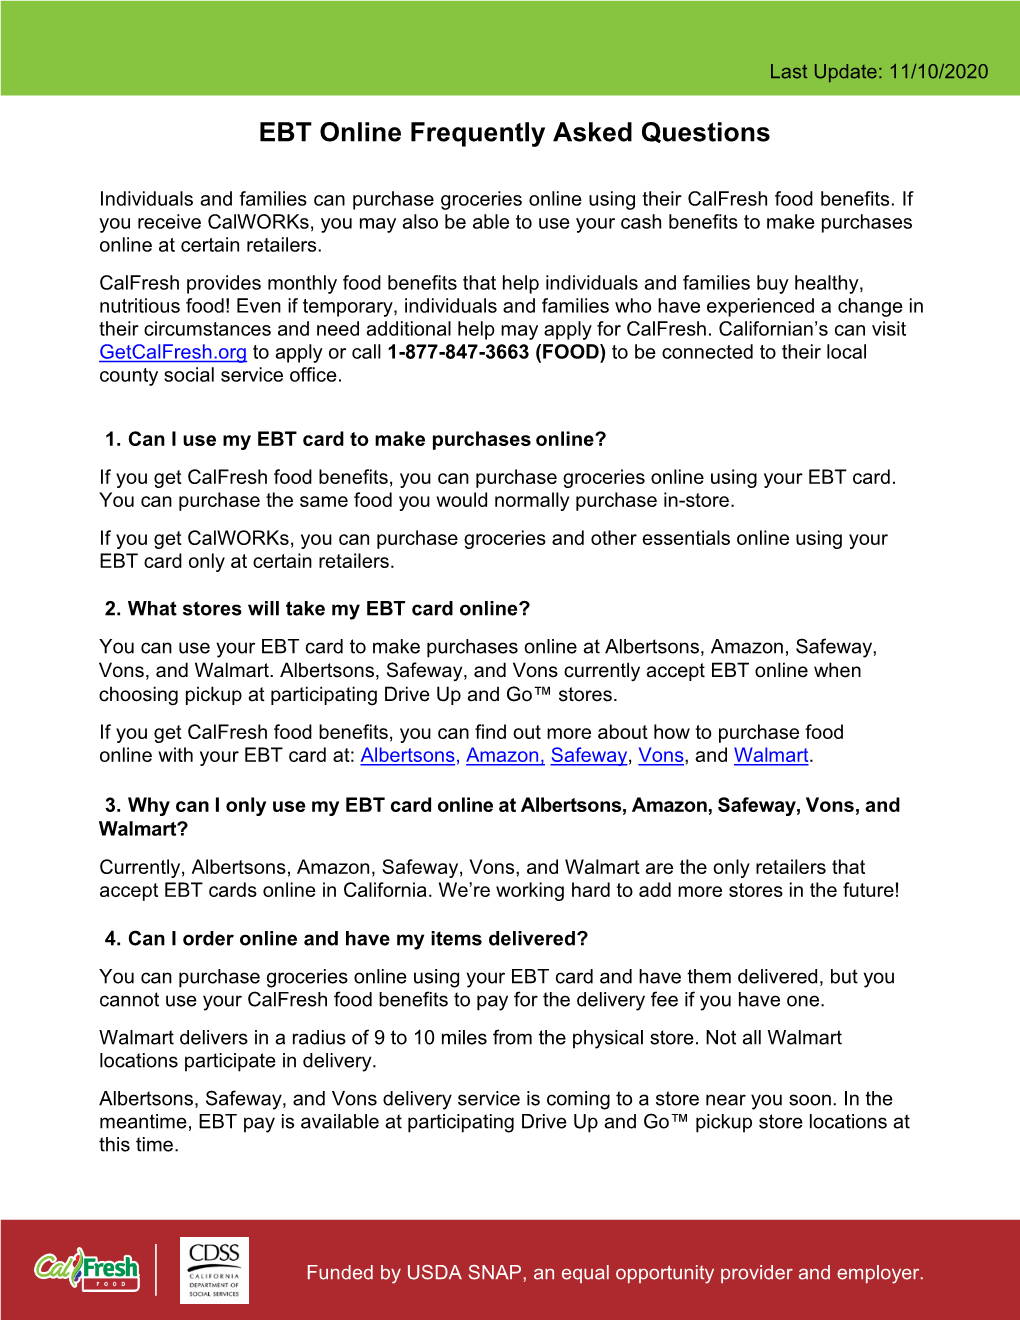 Calfresh EBT Online FAQ Sheet